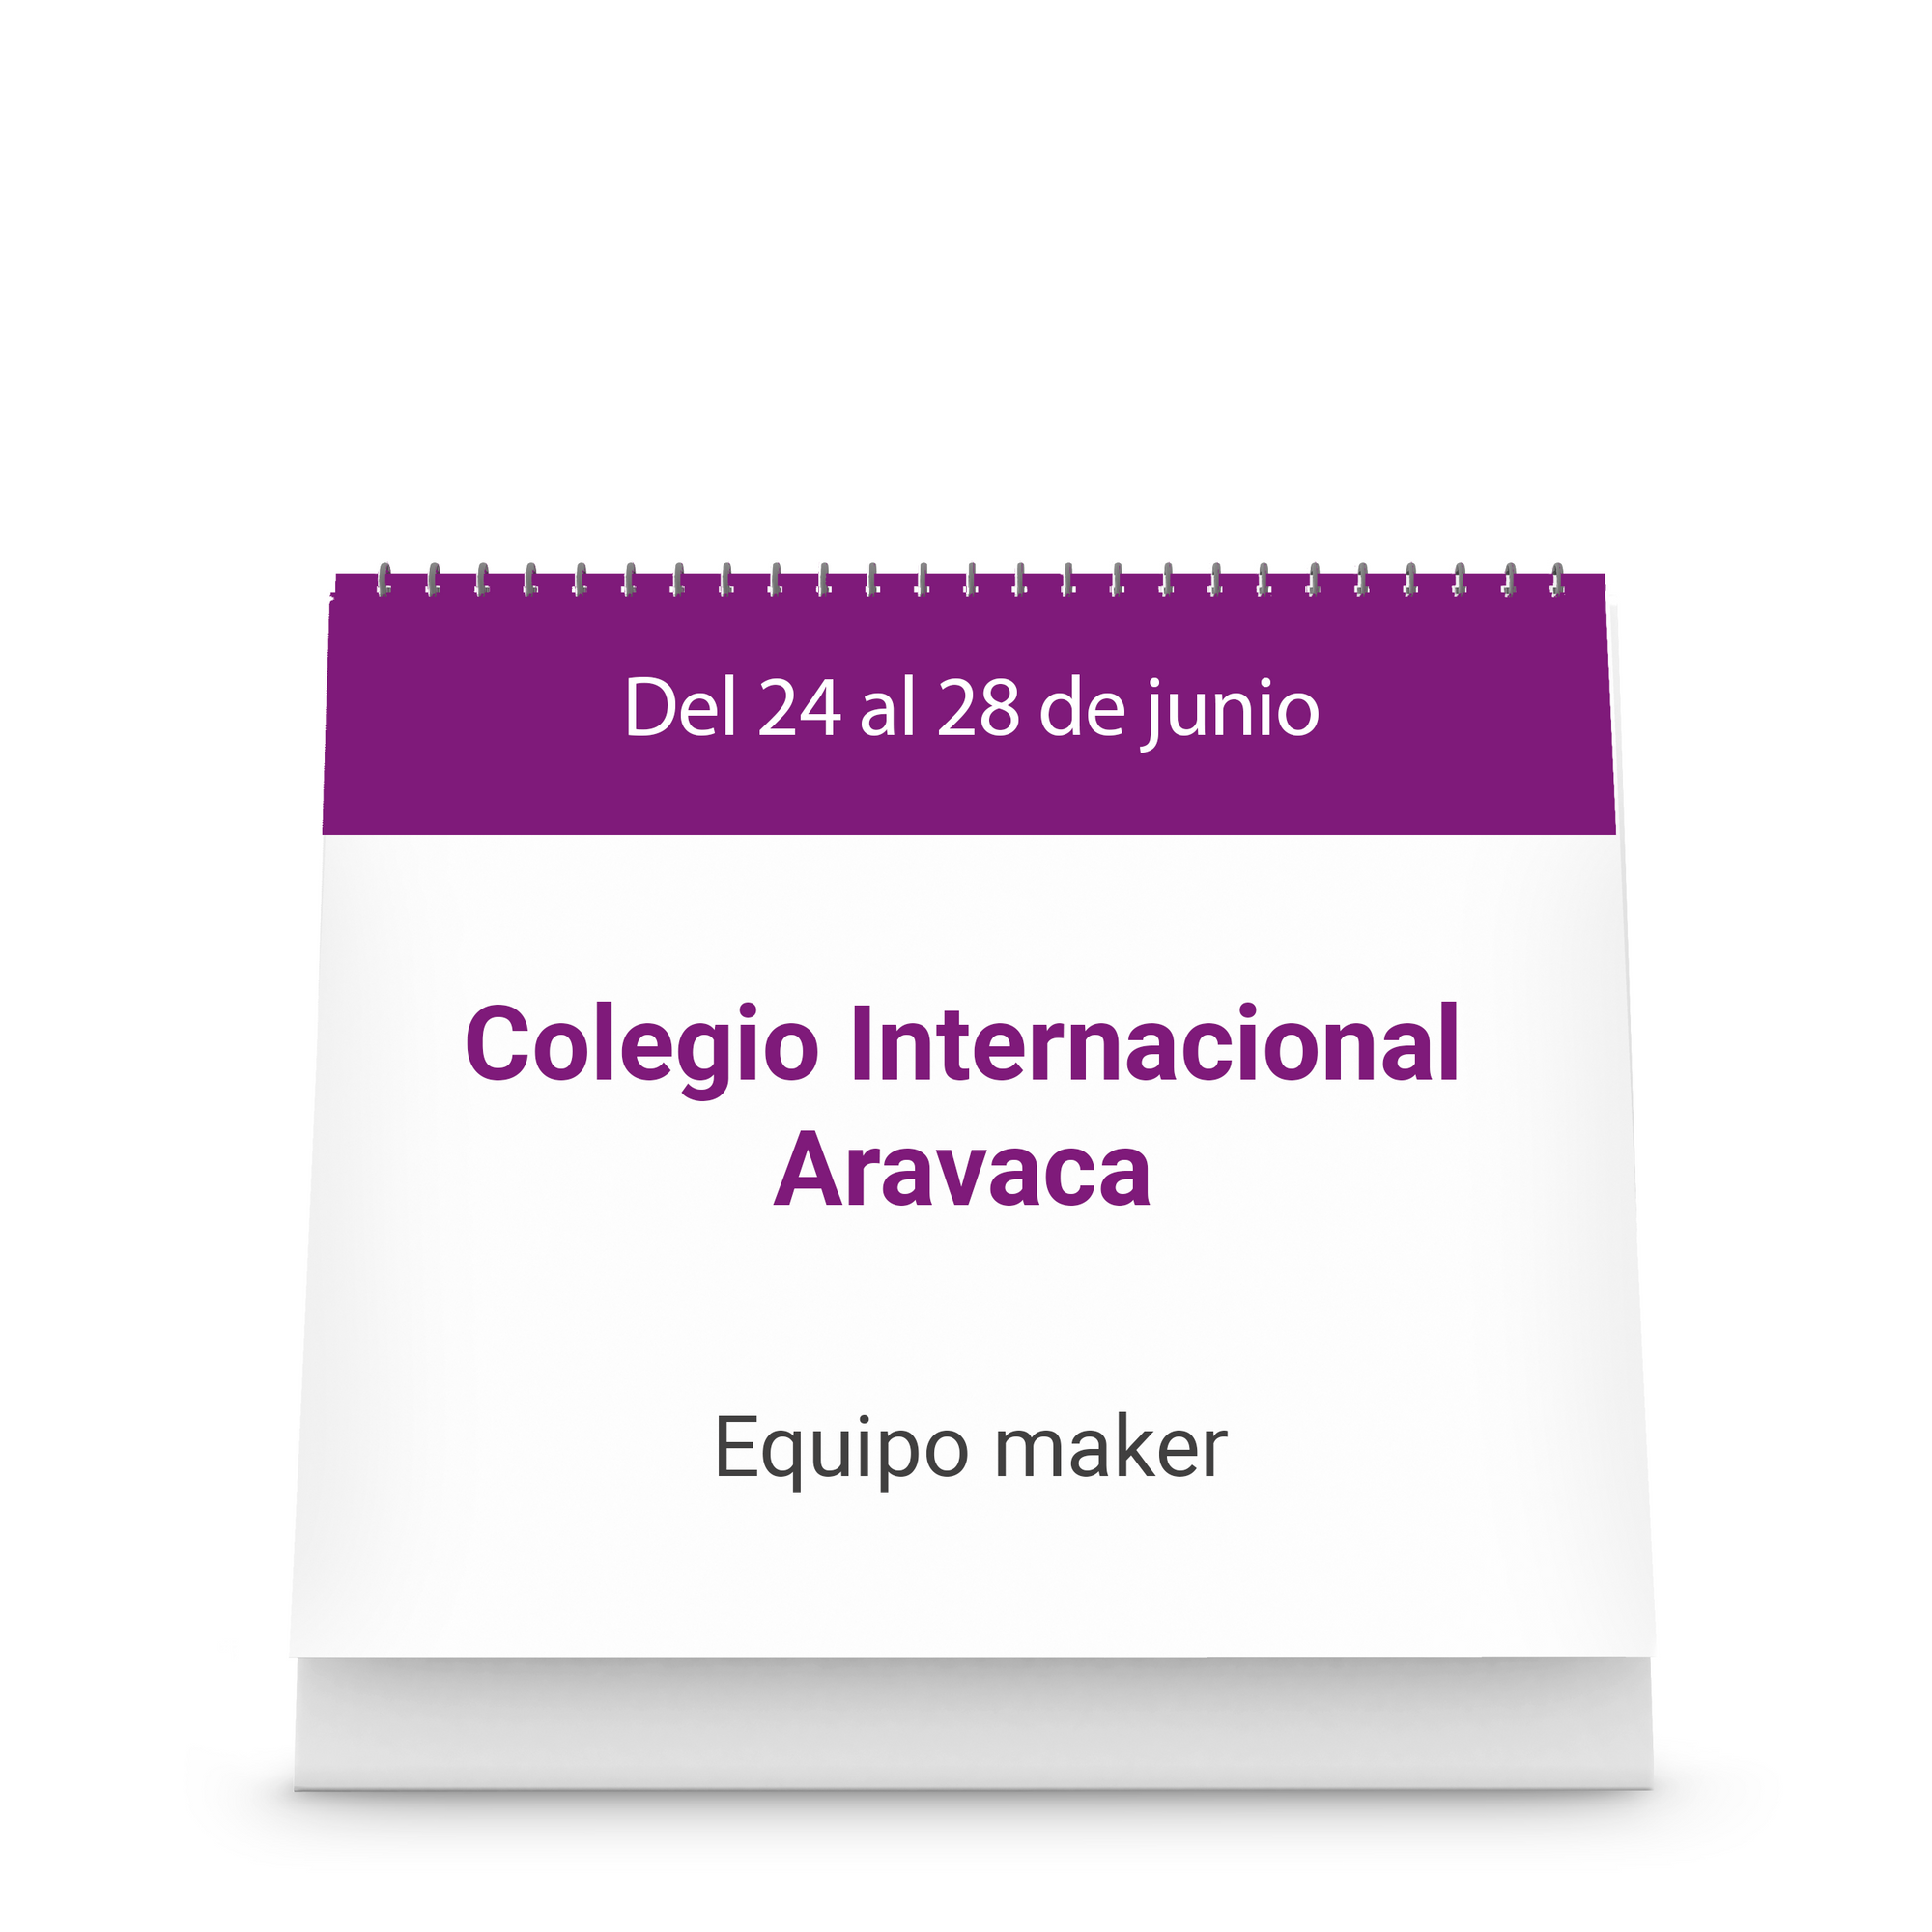 Colegio Internacional Aravaca - Equipo maker